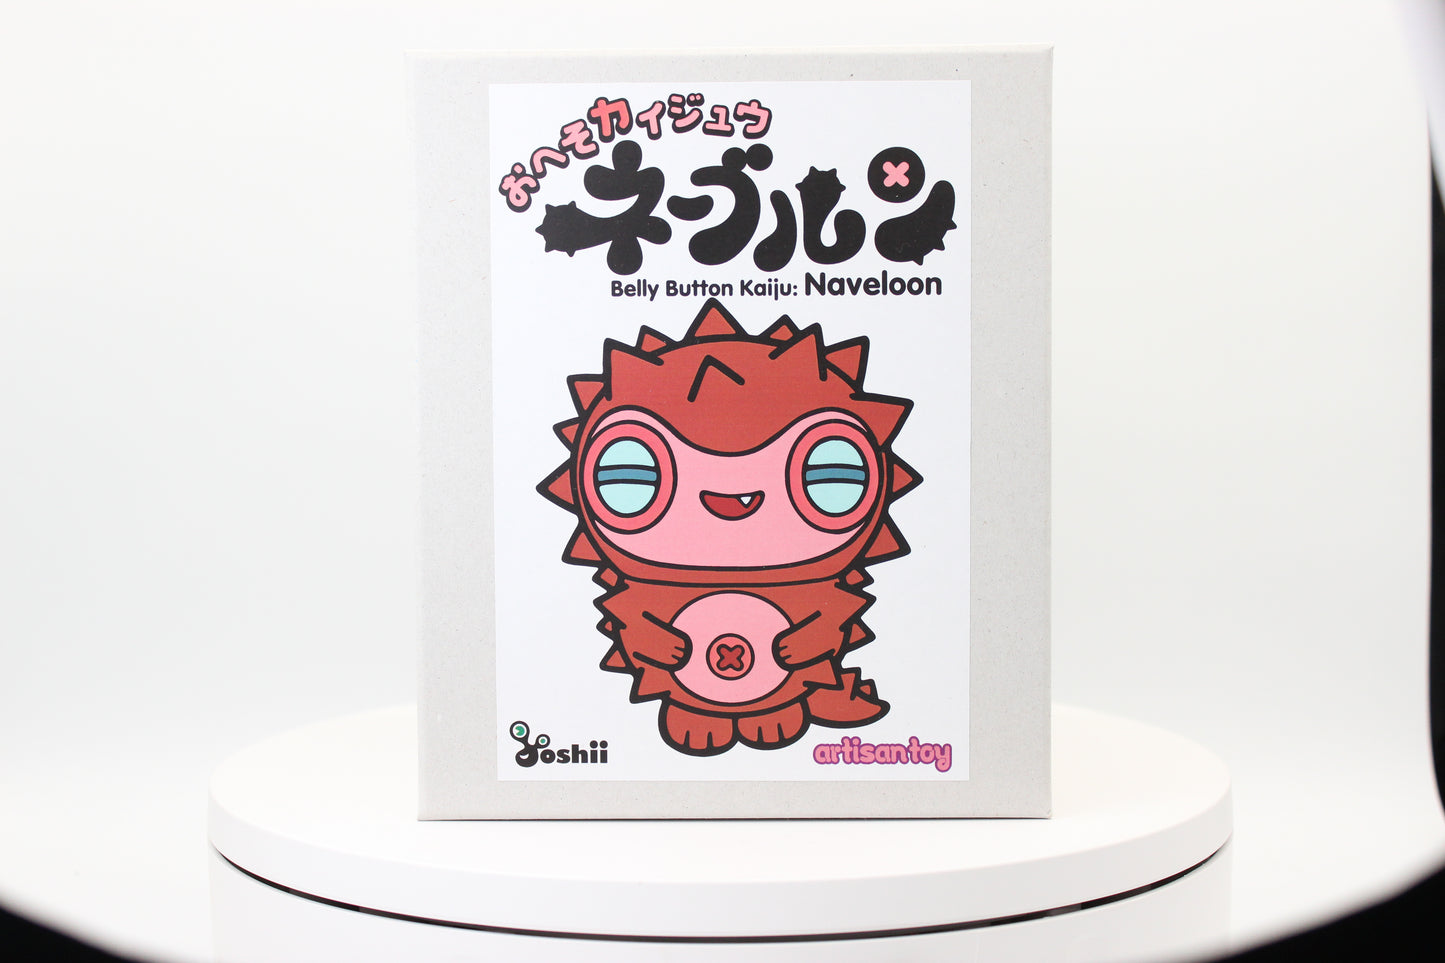 Hiroshi Yoshii " Belly Button Kaiju: Naveloon"